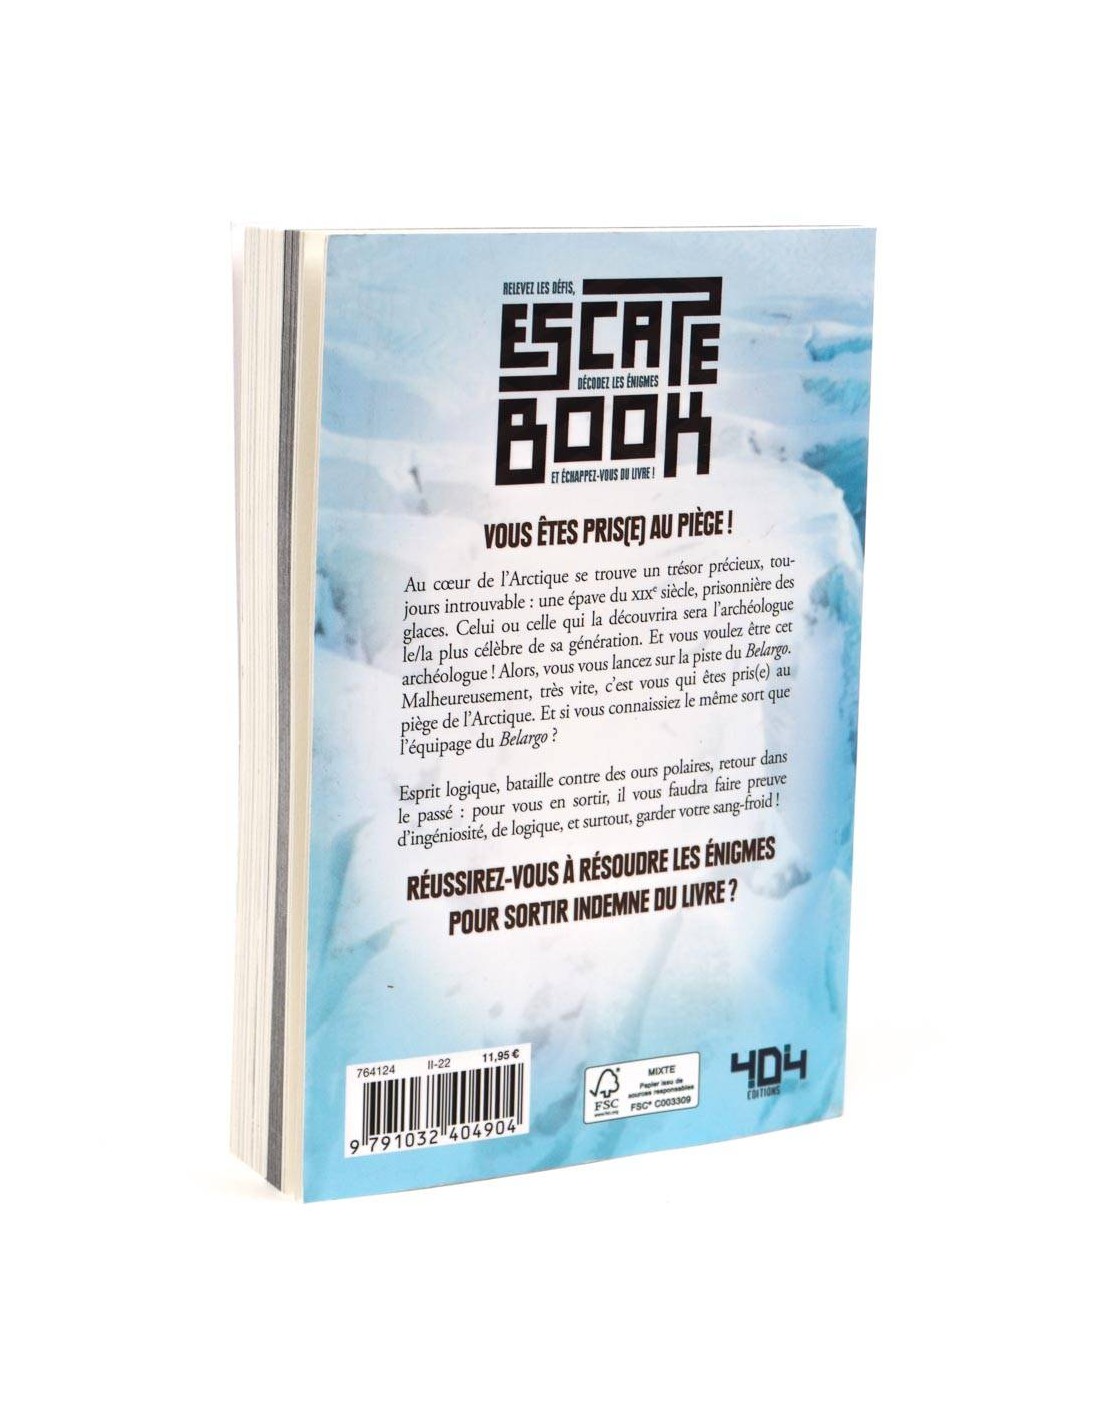 Escape Book - Fort Boyard Pièged Dans Le Fort - 404 Editions